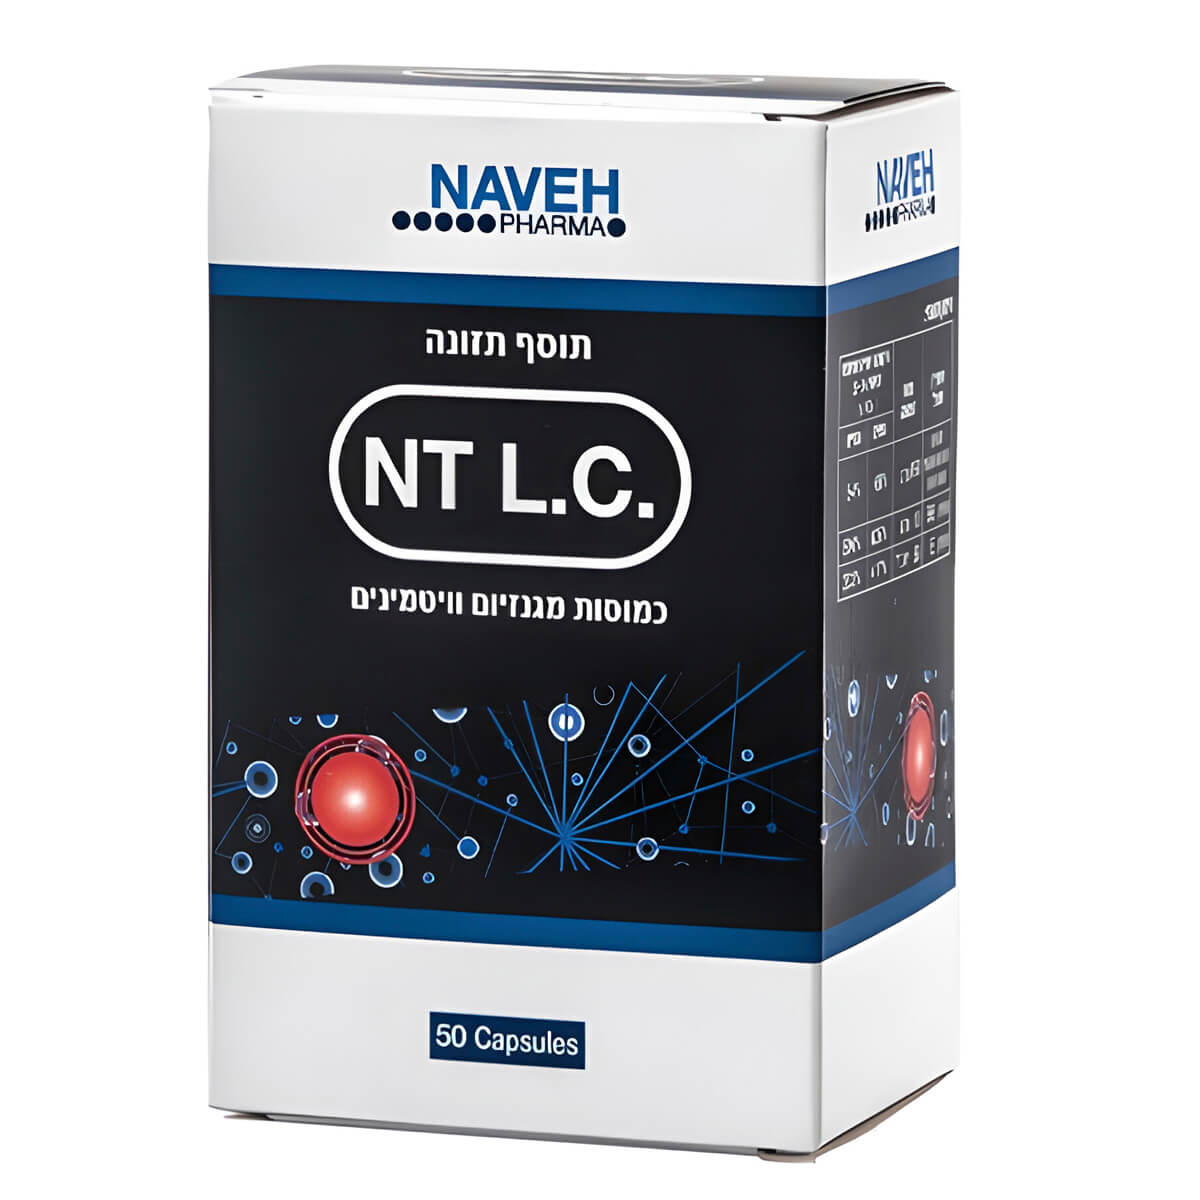 Пищевая добавка NT L.C. Naveh pharma для предотвращения судорог мышц ног во время сна, 50 капсул